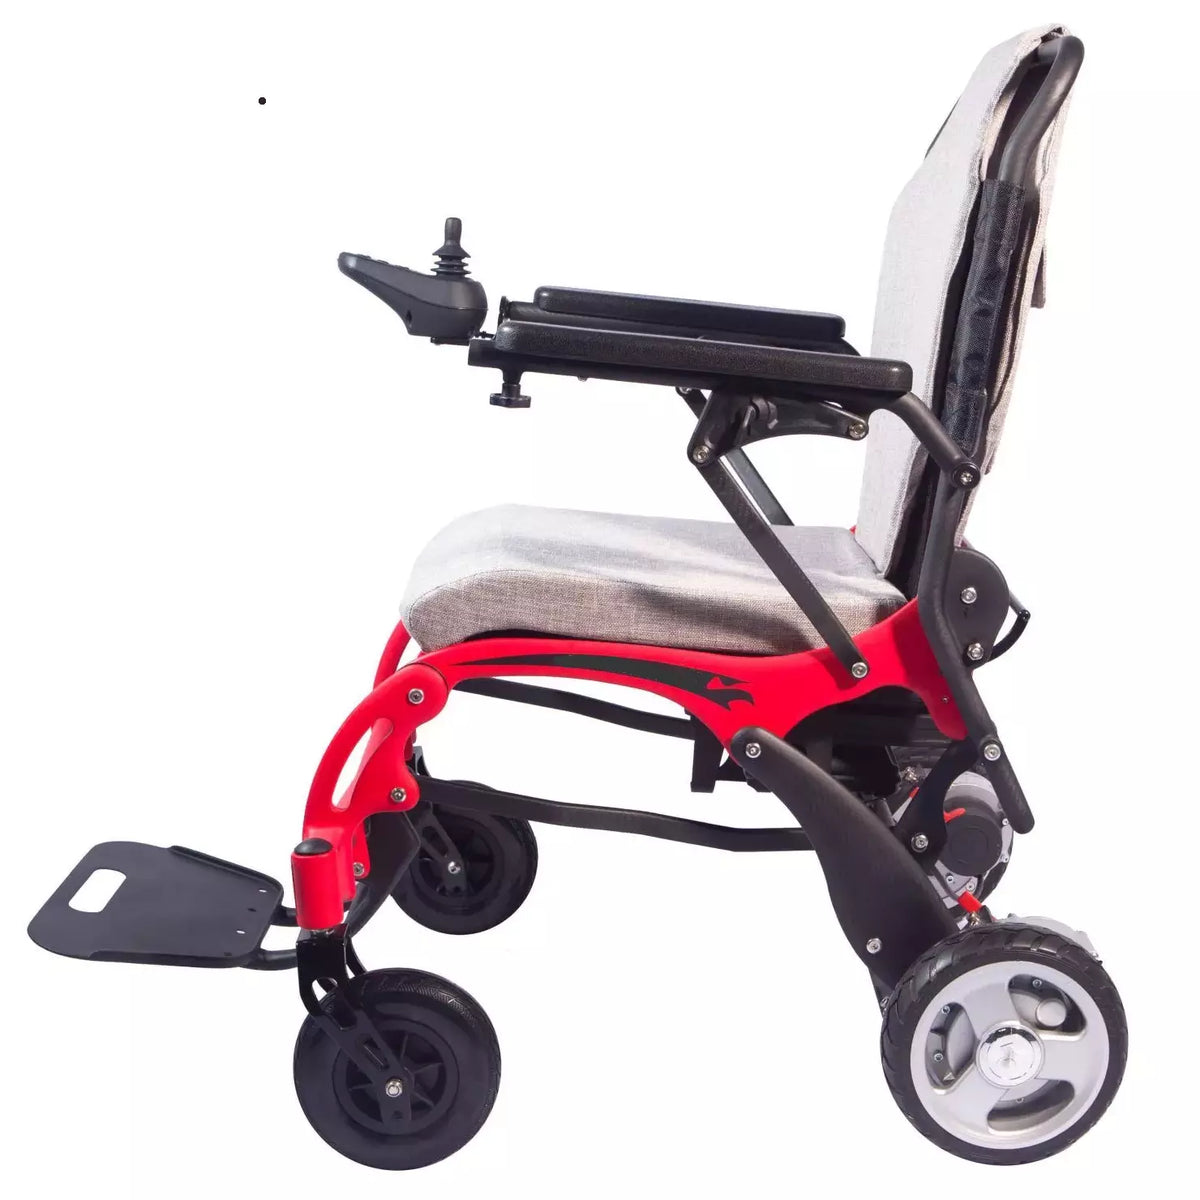 锂碳纤维折叠动力轮椅